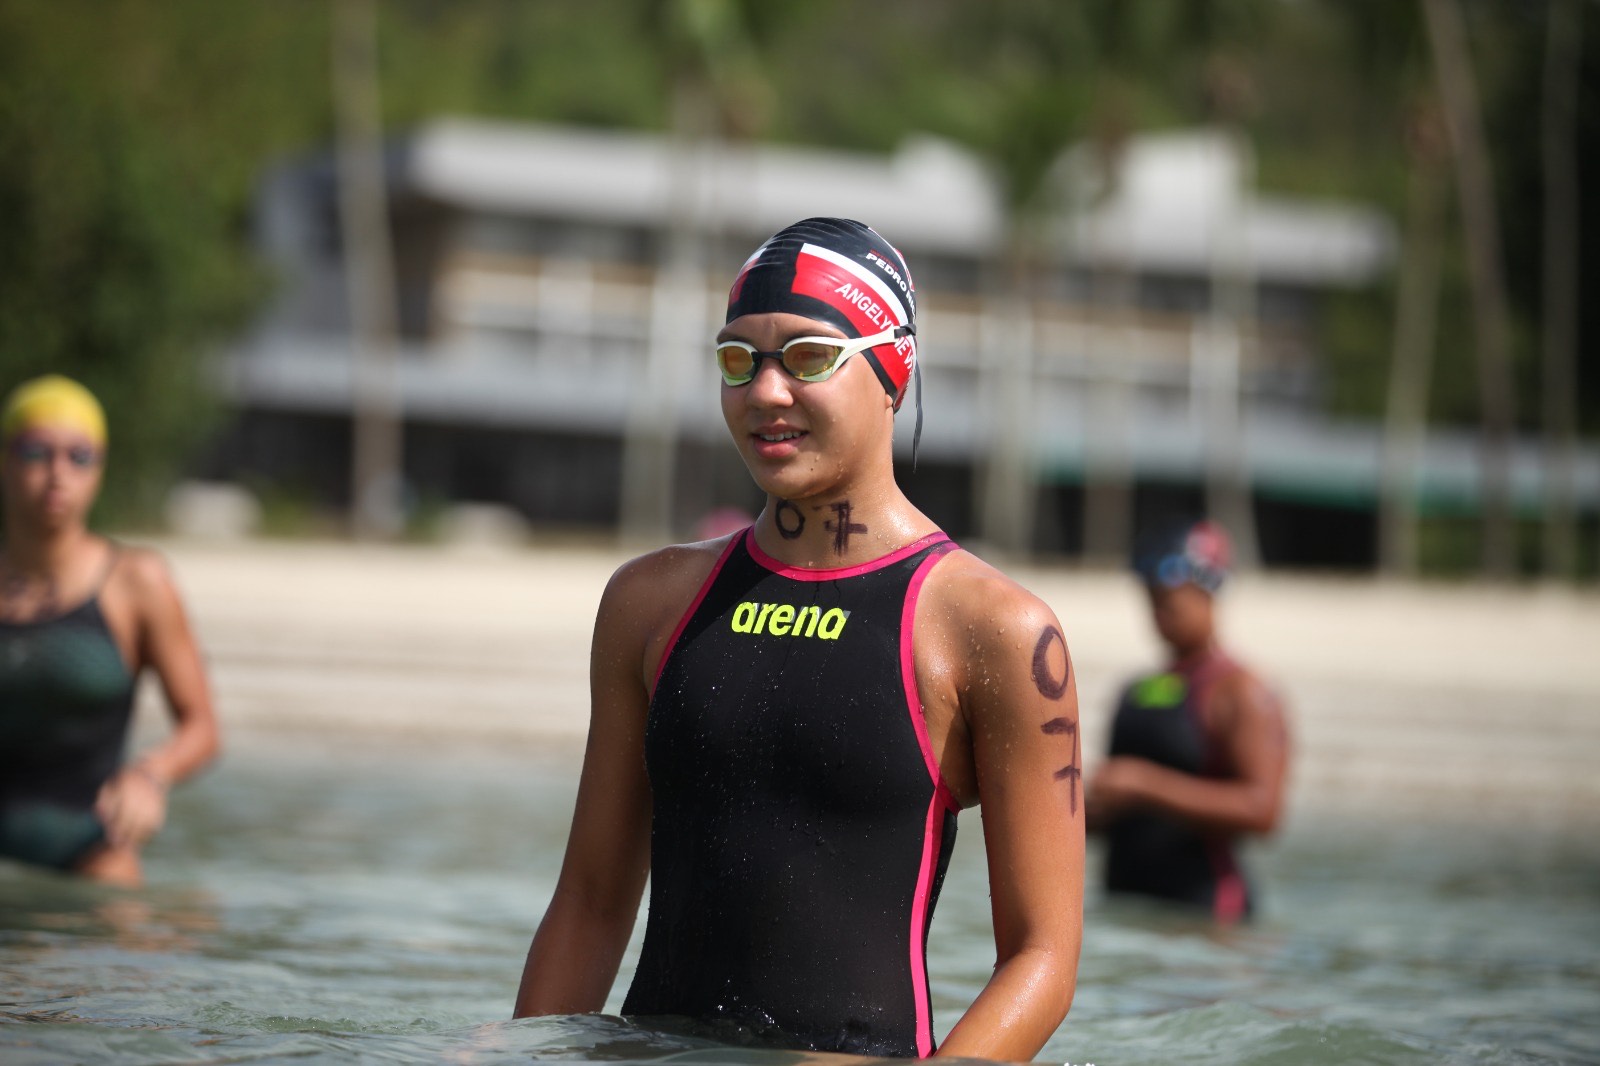 Nadadora do ‘Manaus Olímpica’ conquista tetracampeonato brasileiro infantil